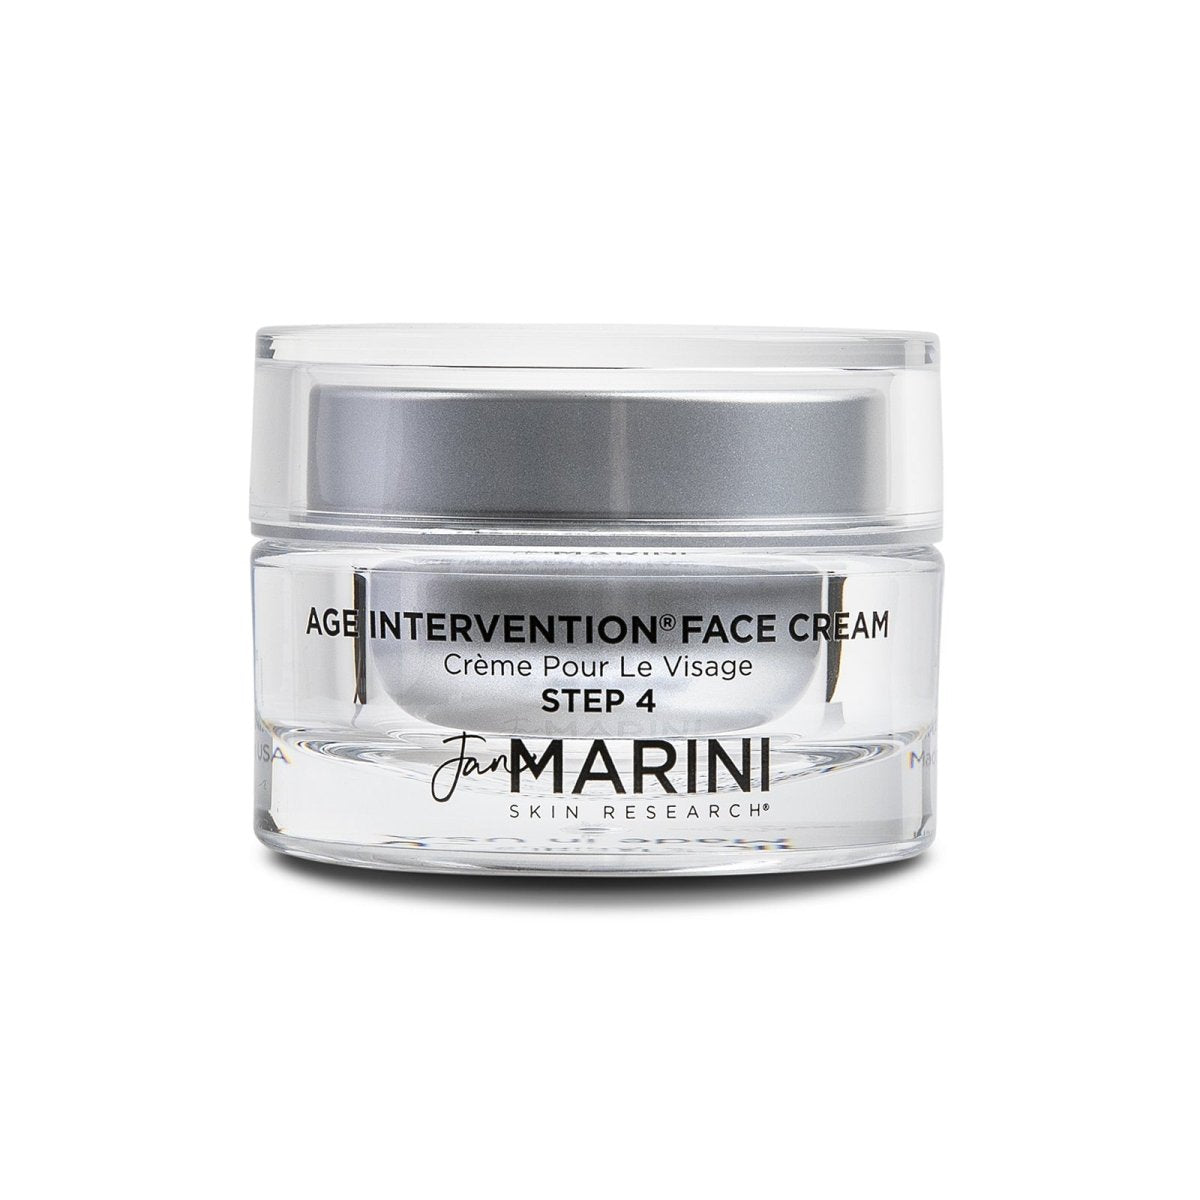 Jan Marini Age Intervention® Face Cream - SkincareEssentials